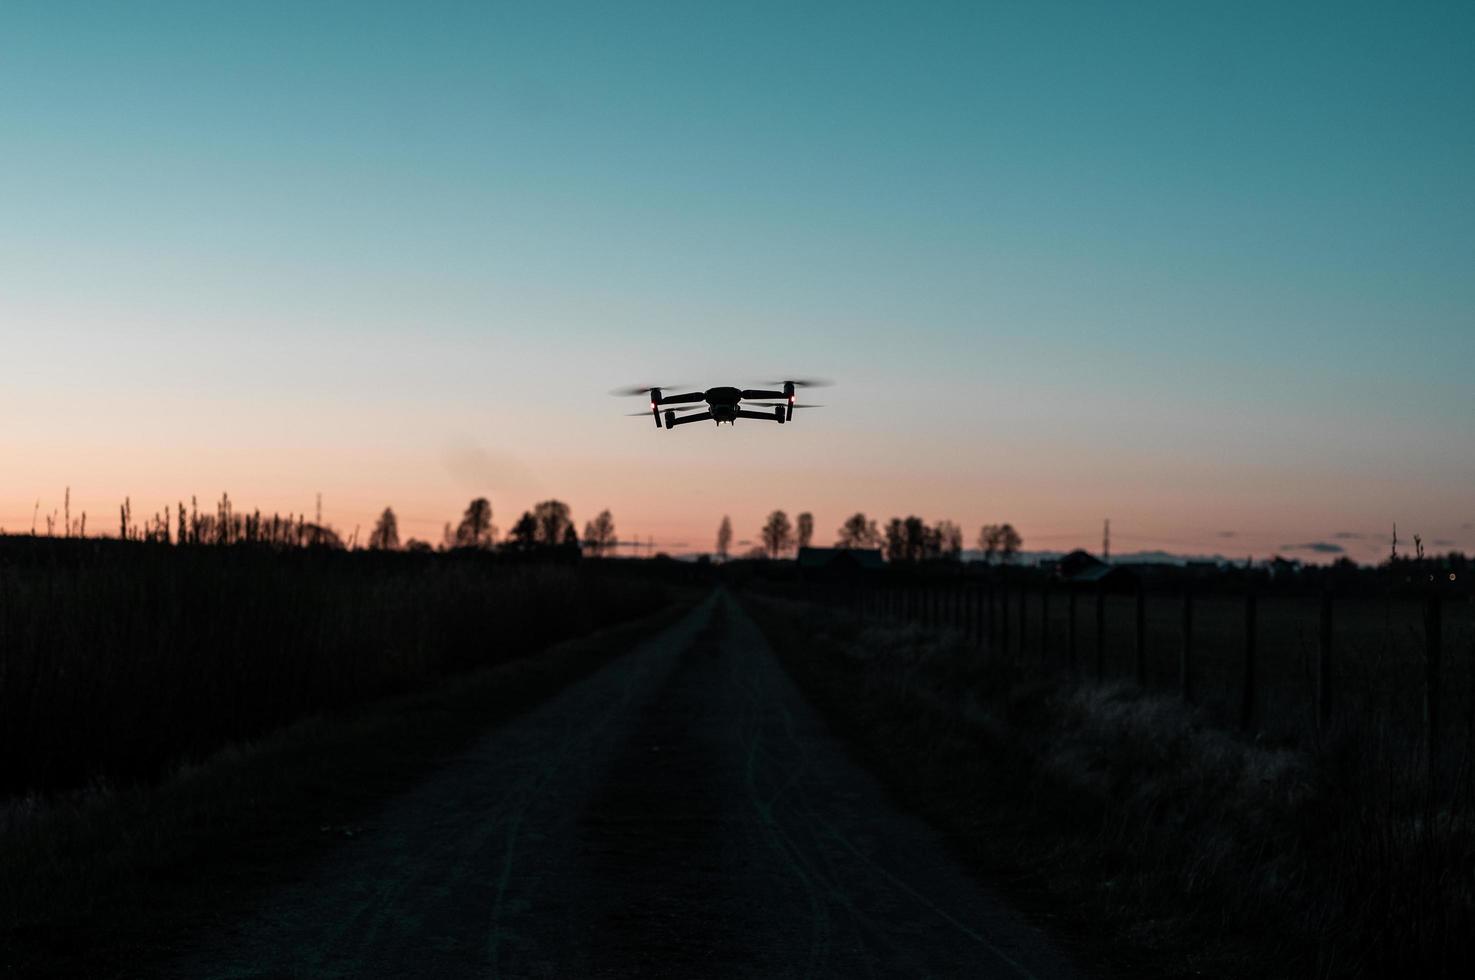 drönare som flyger över vägen vid solnedgången foto